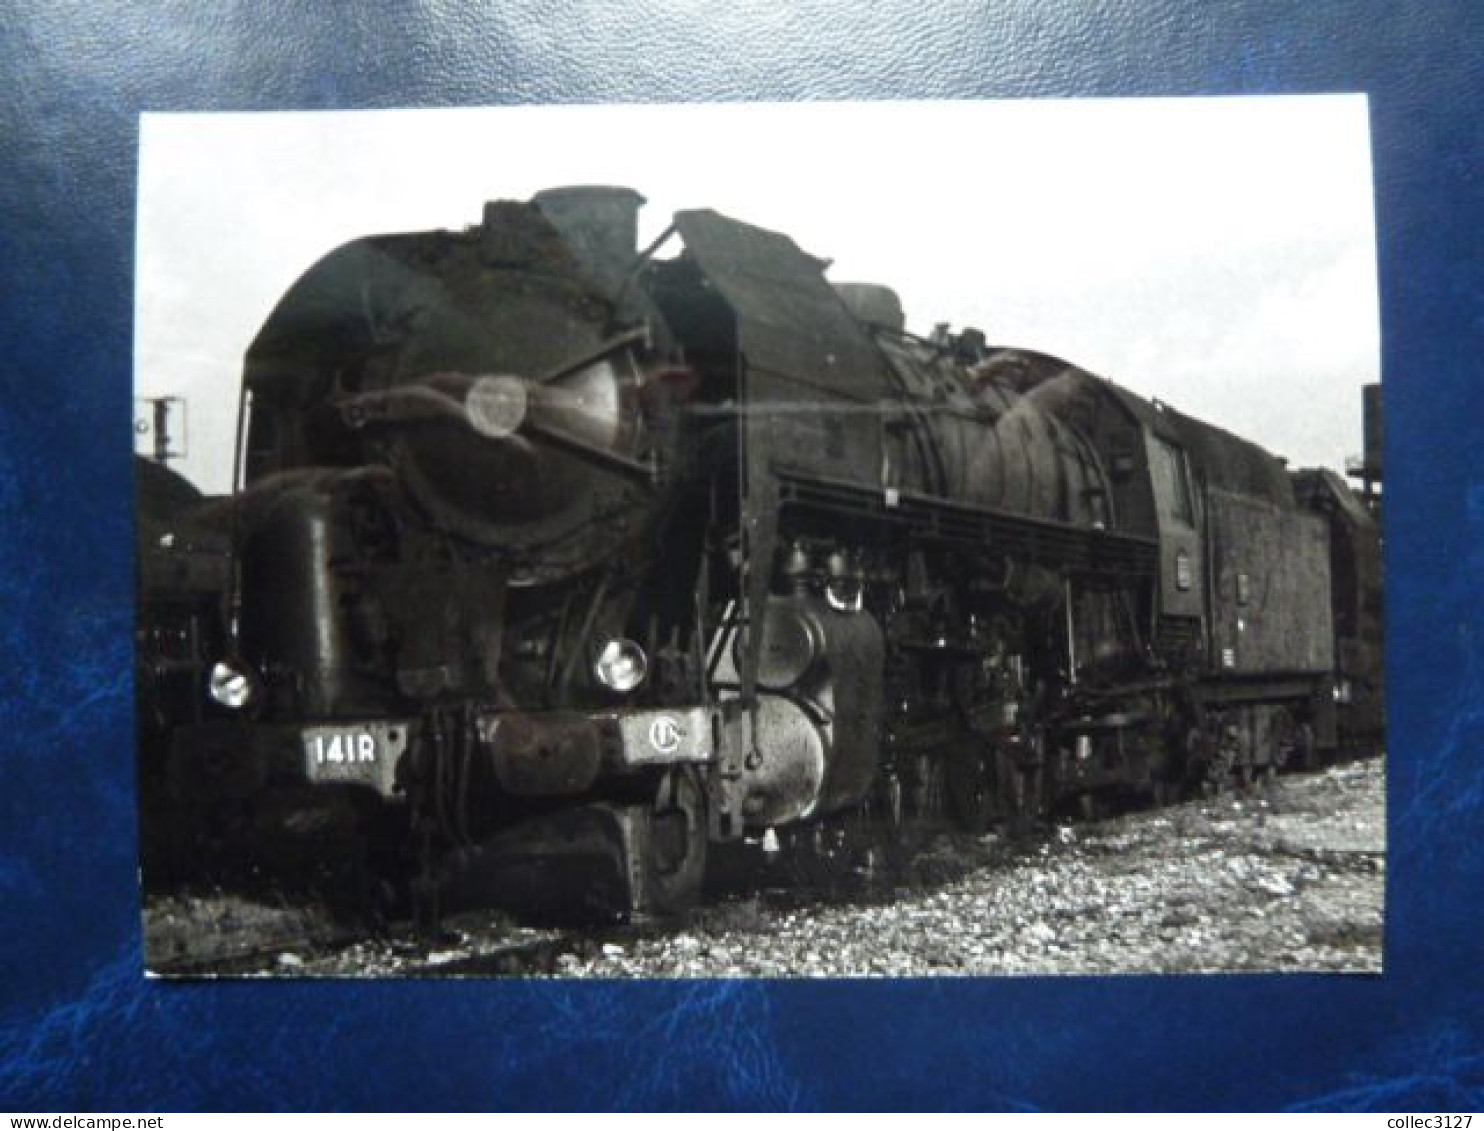 Photo Originale 13*9 Cm - 141 R Fuel - Narbonne 1972 - Trains